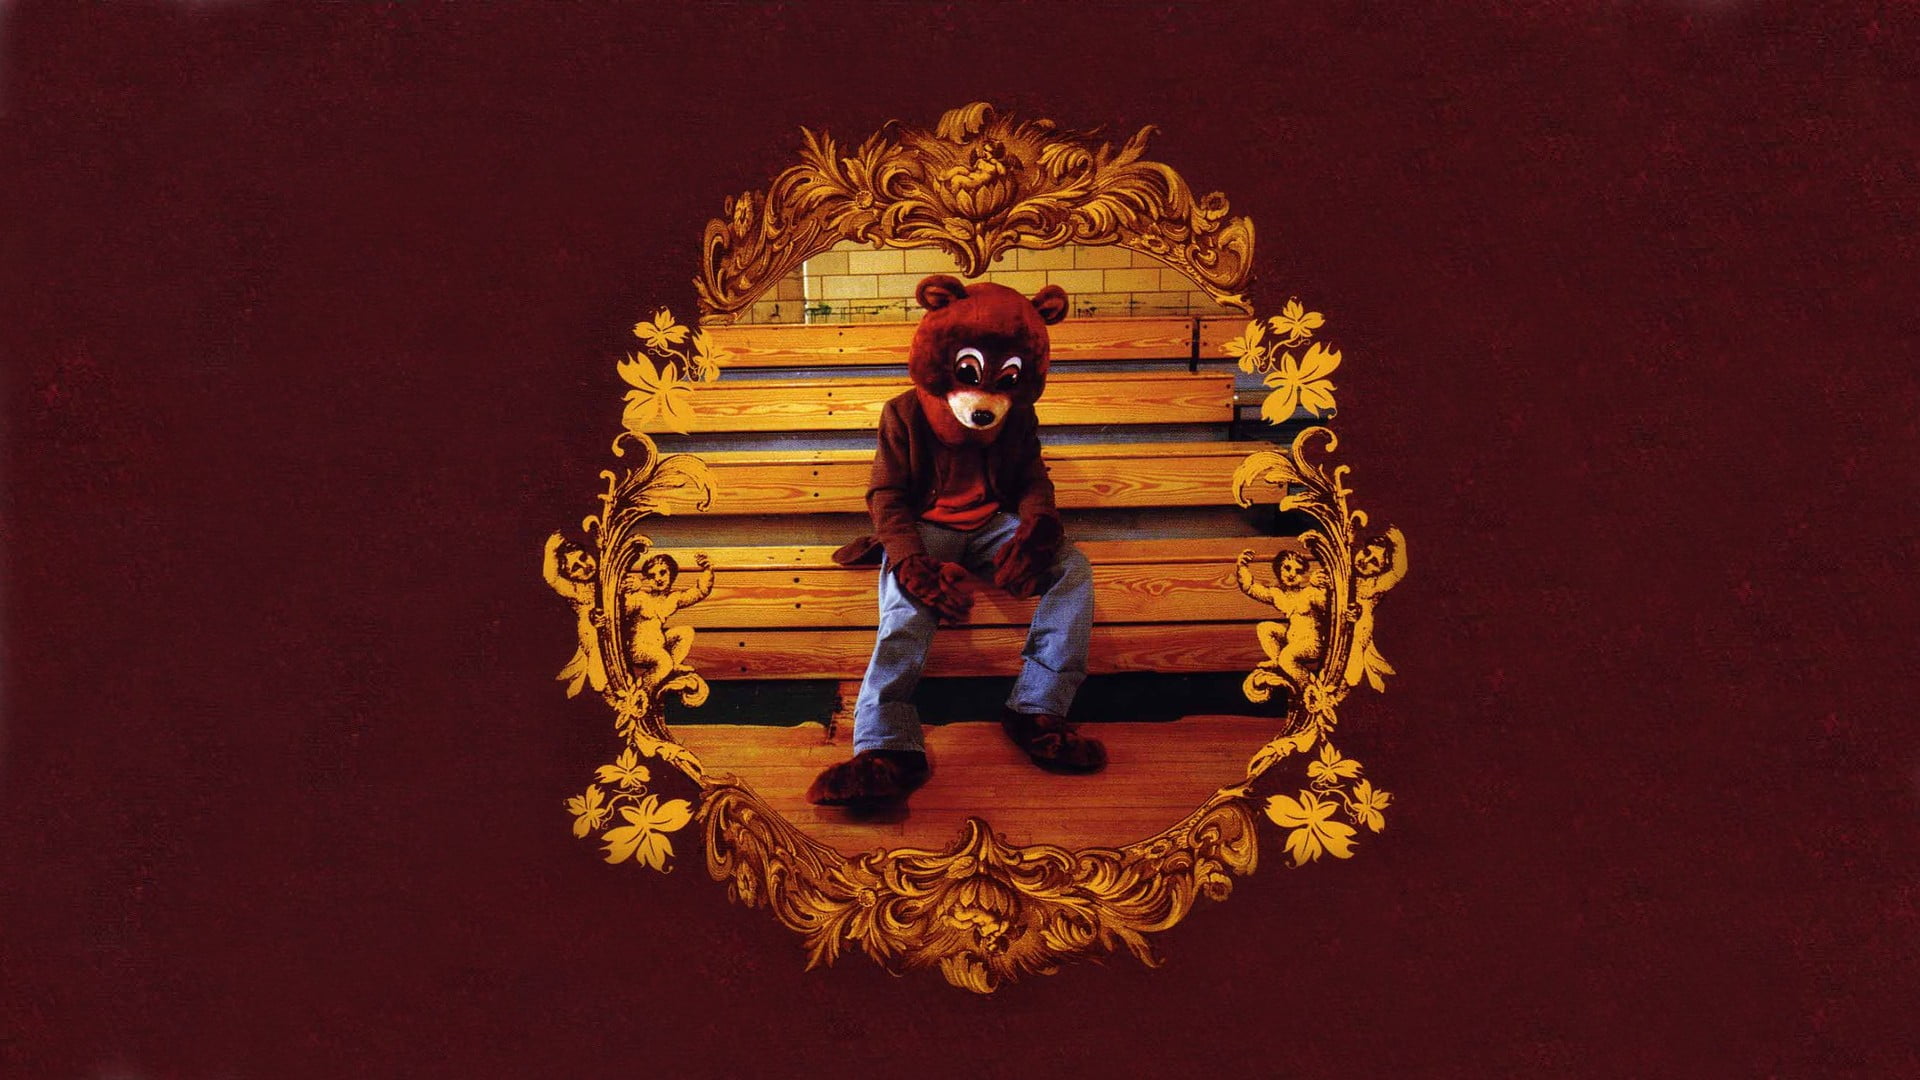 Brown bear costume, hip hop, Kanye West